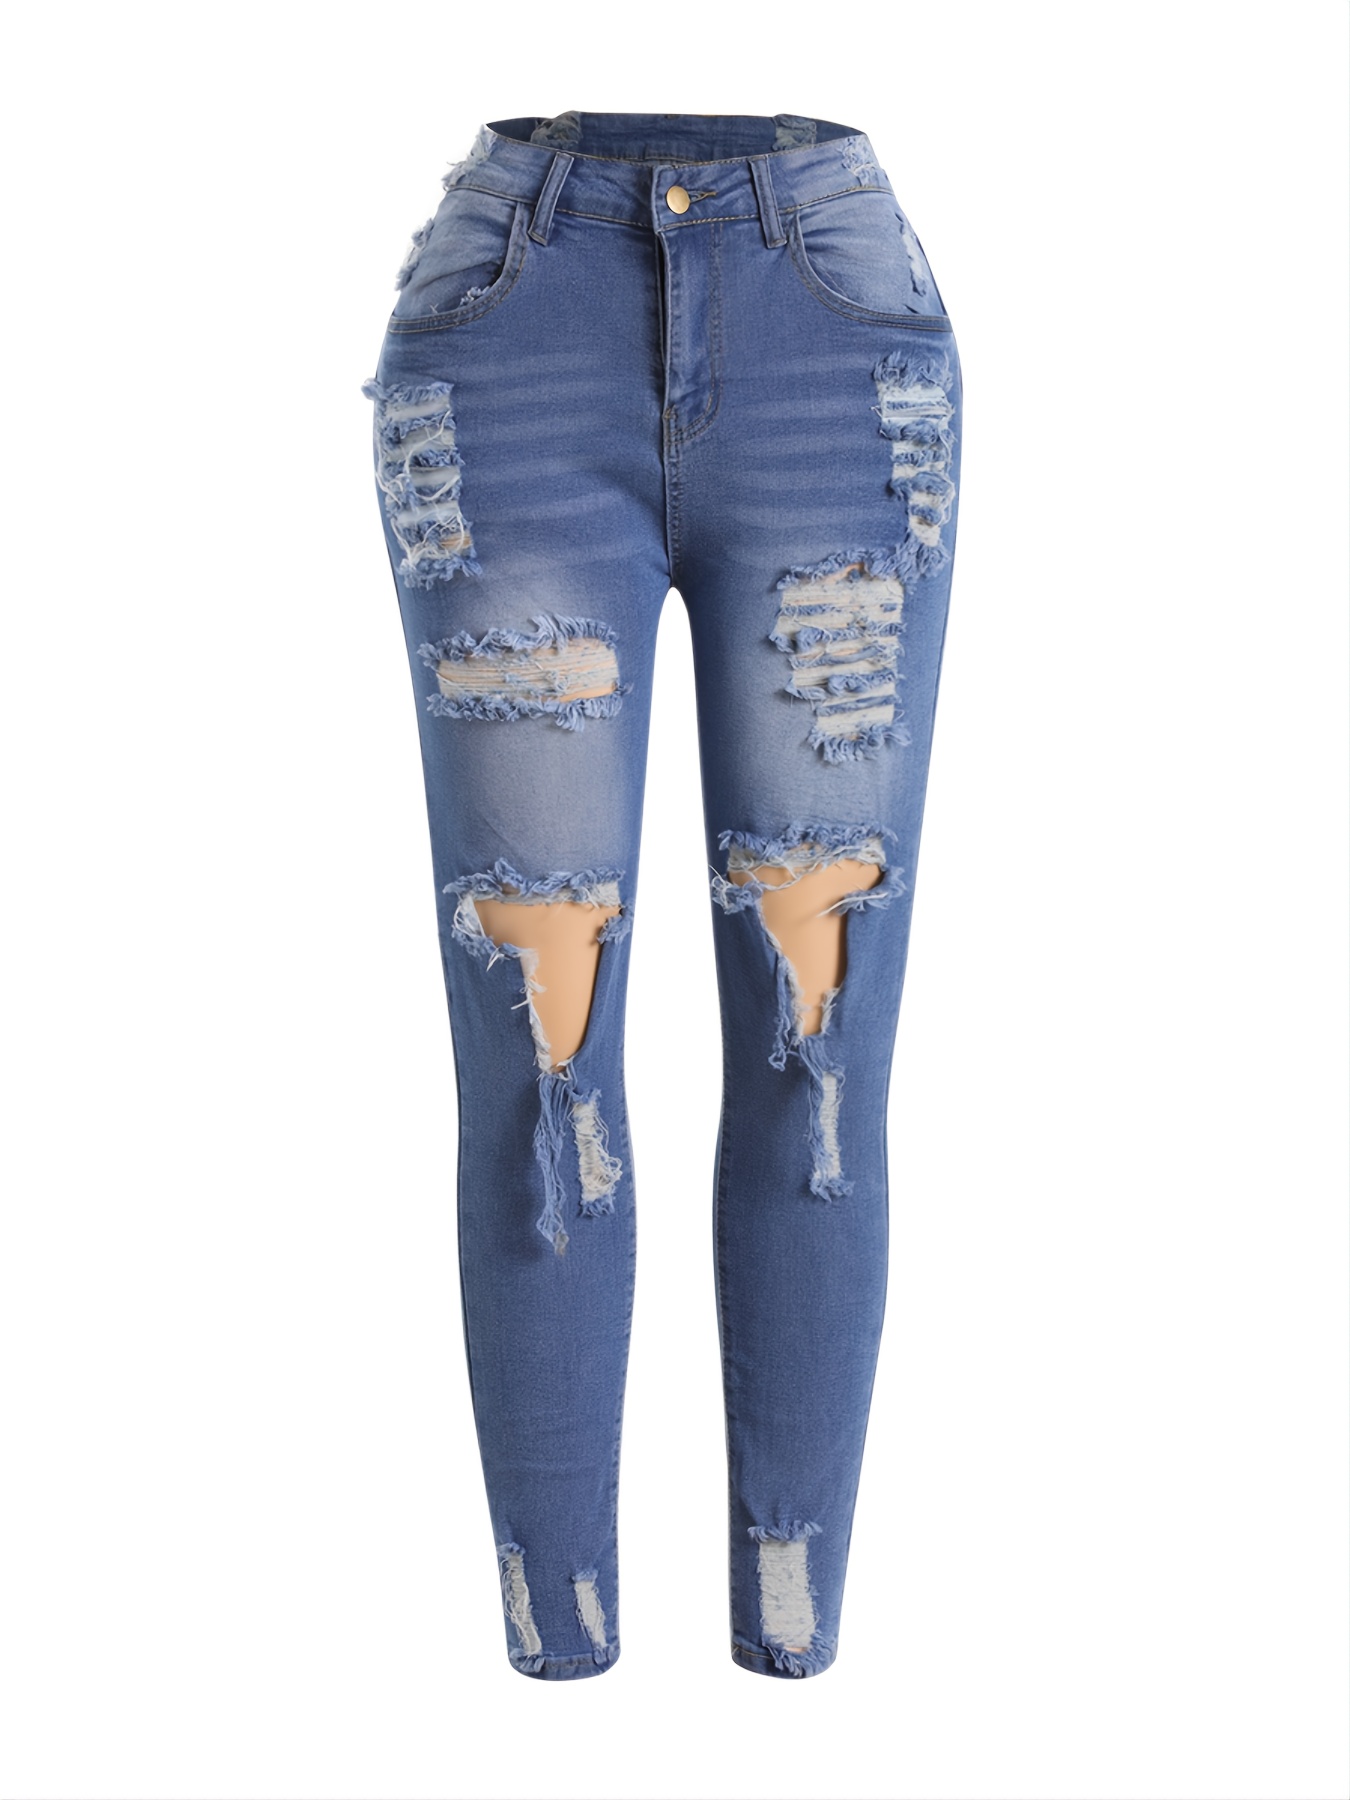 Jeans ajustados ajustados y elásticos rasgados de tiro alto, pantalones de  mezclilla con botón de cremallera en relieve con ondulación de agua de cint